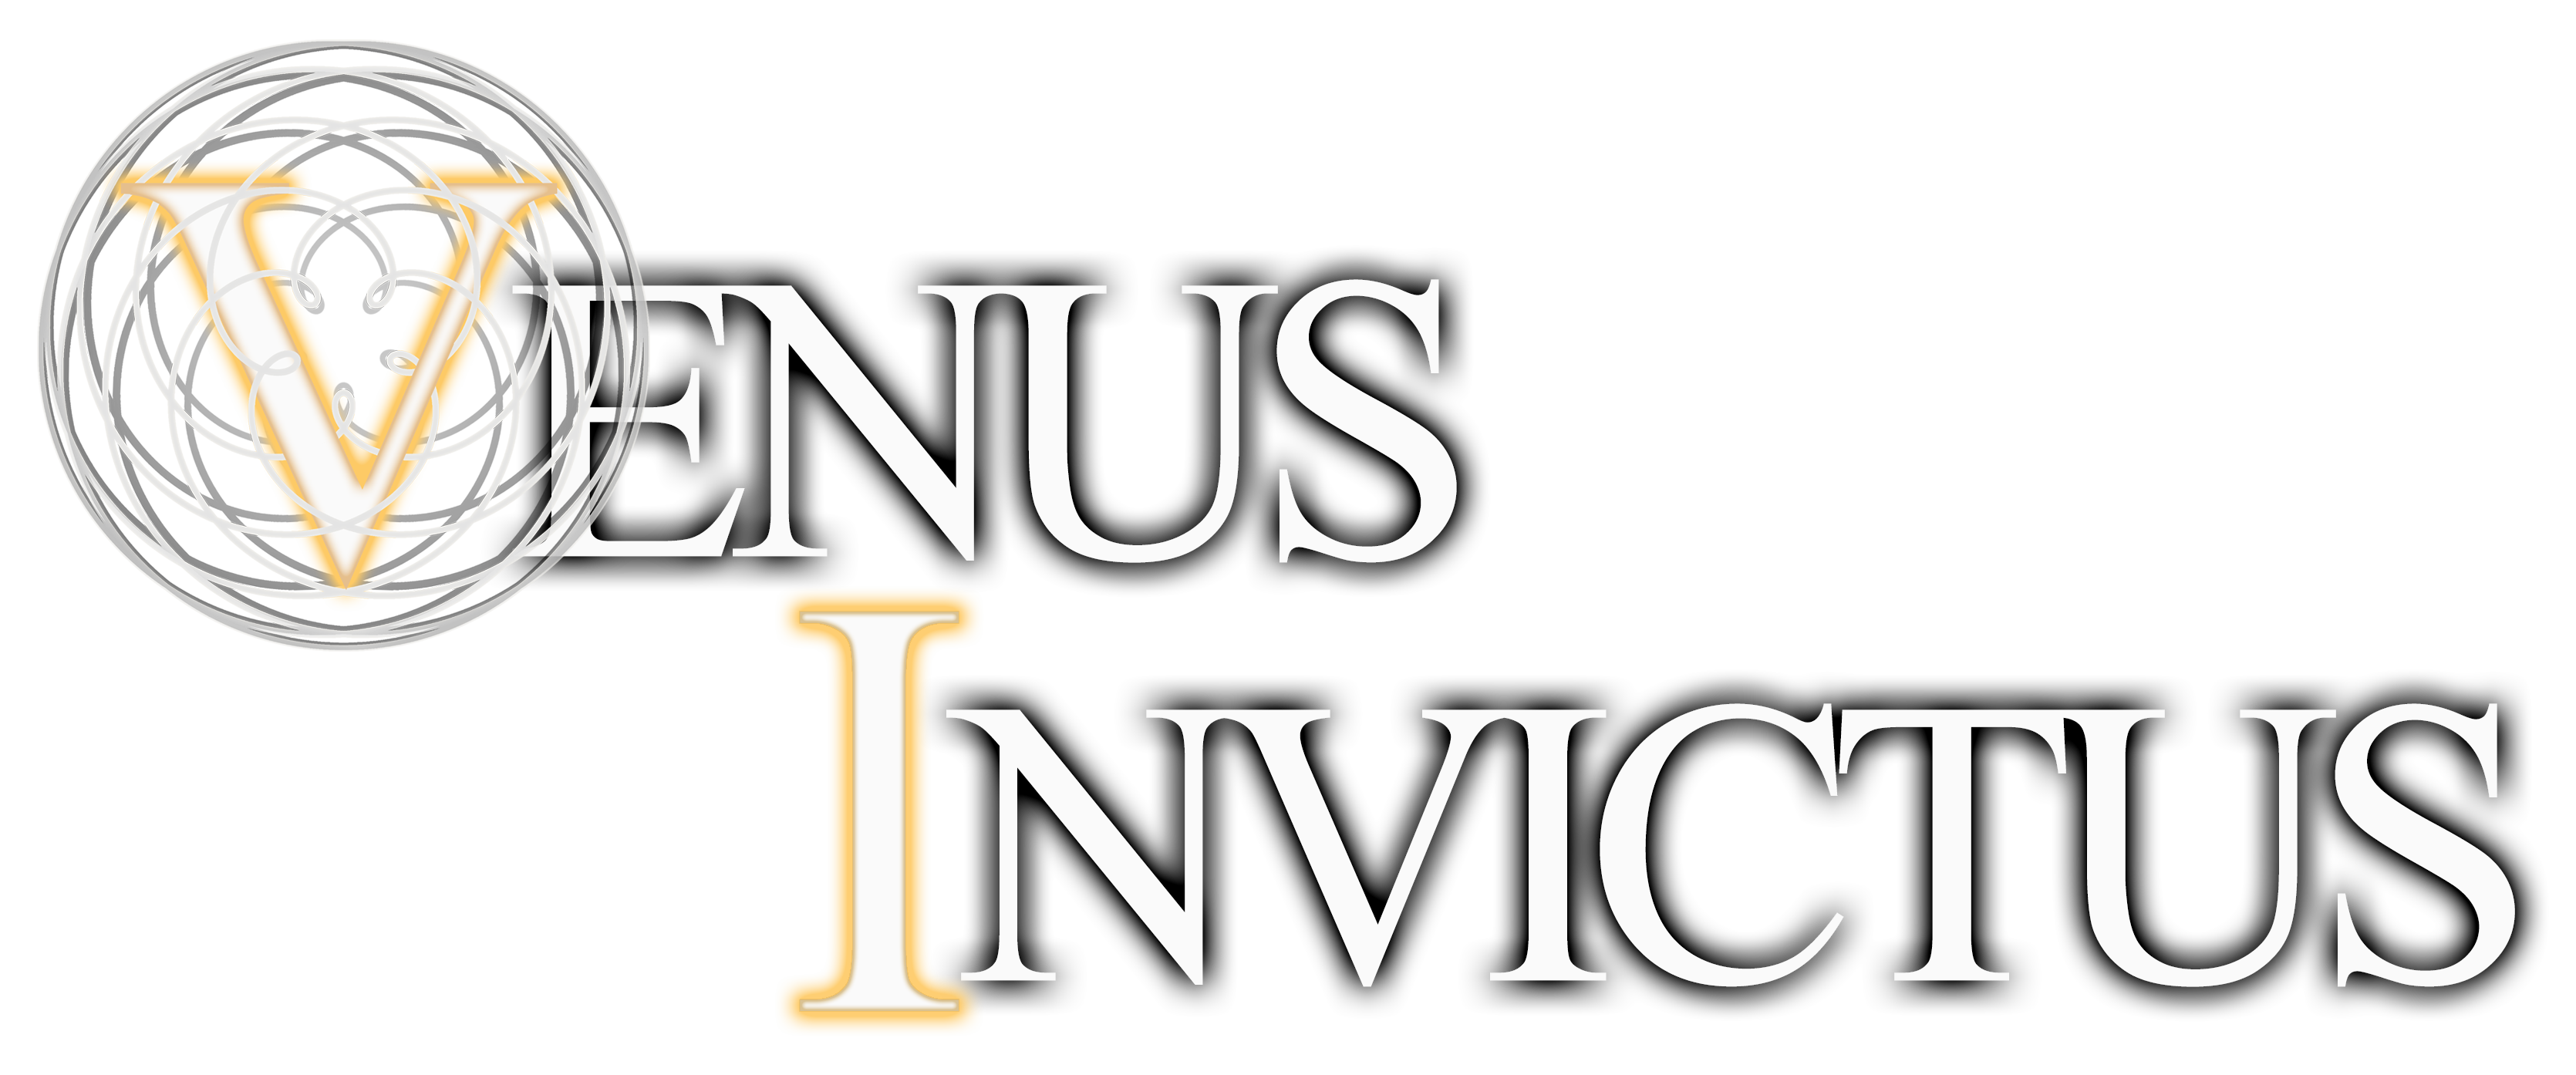 venus invictus logo